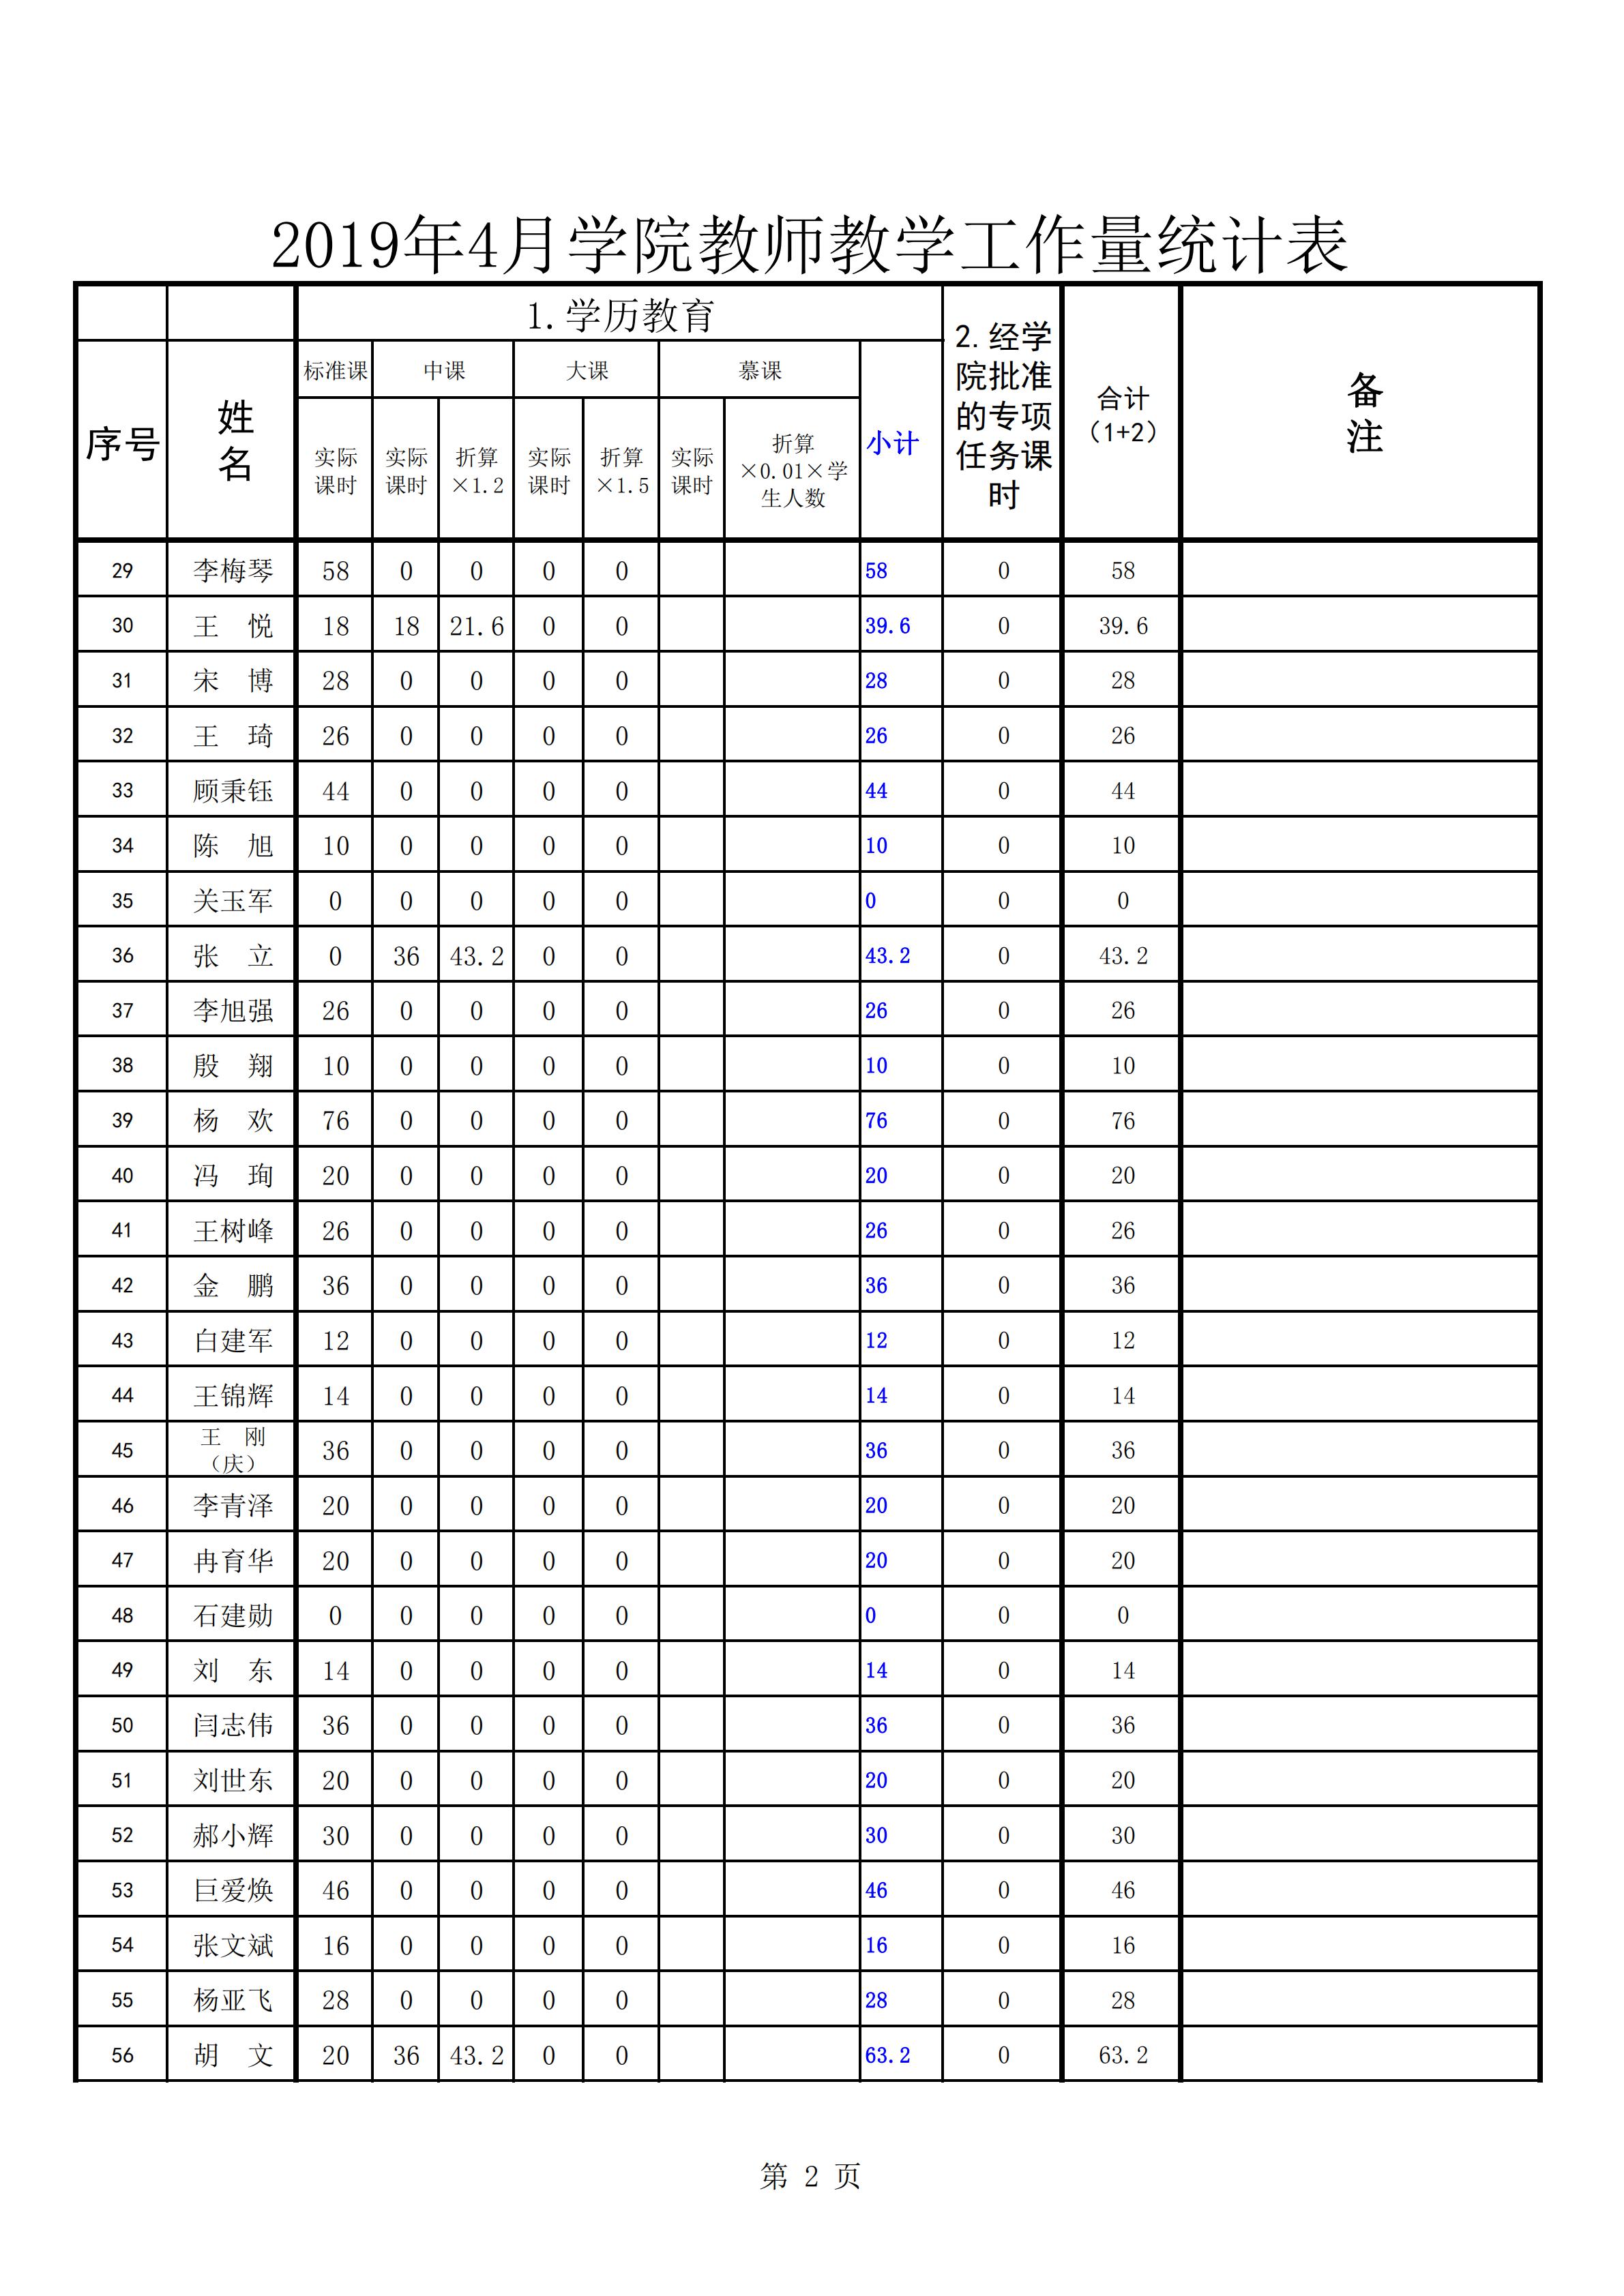 2019年4月份教师教学工作量统计表(公示0505)_01.jpg